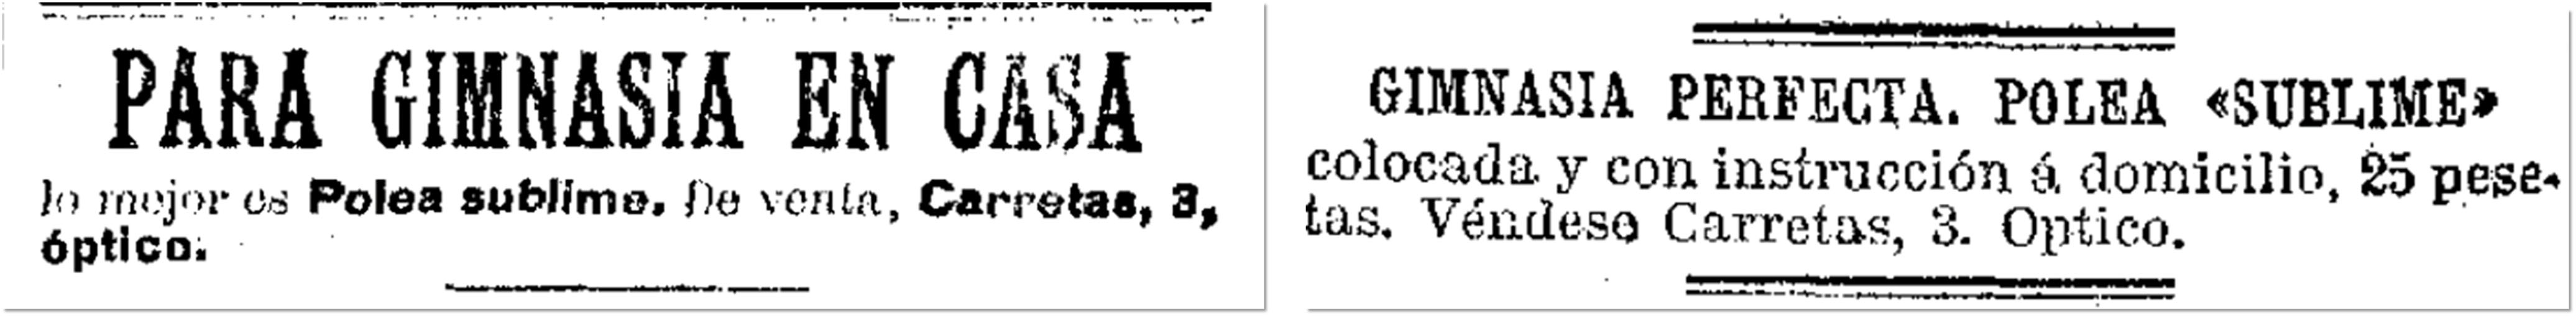 La Época, 18 de mayo de 1904, p. 3; El Imparcial, 20 de diciembre de 1904, p. 4